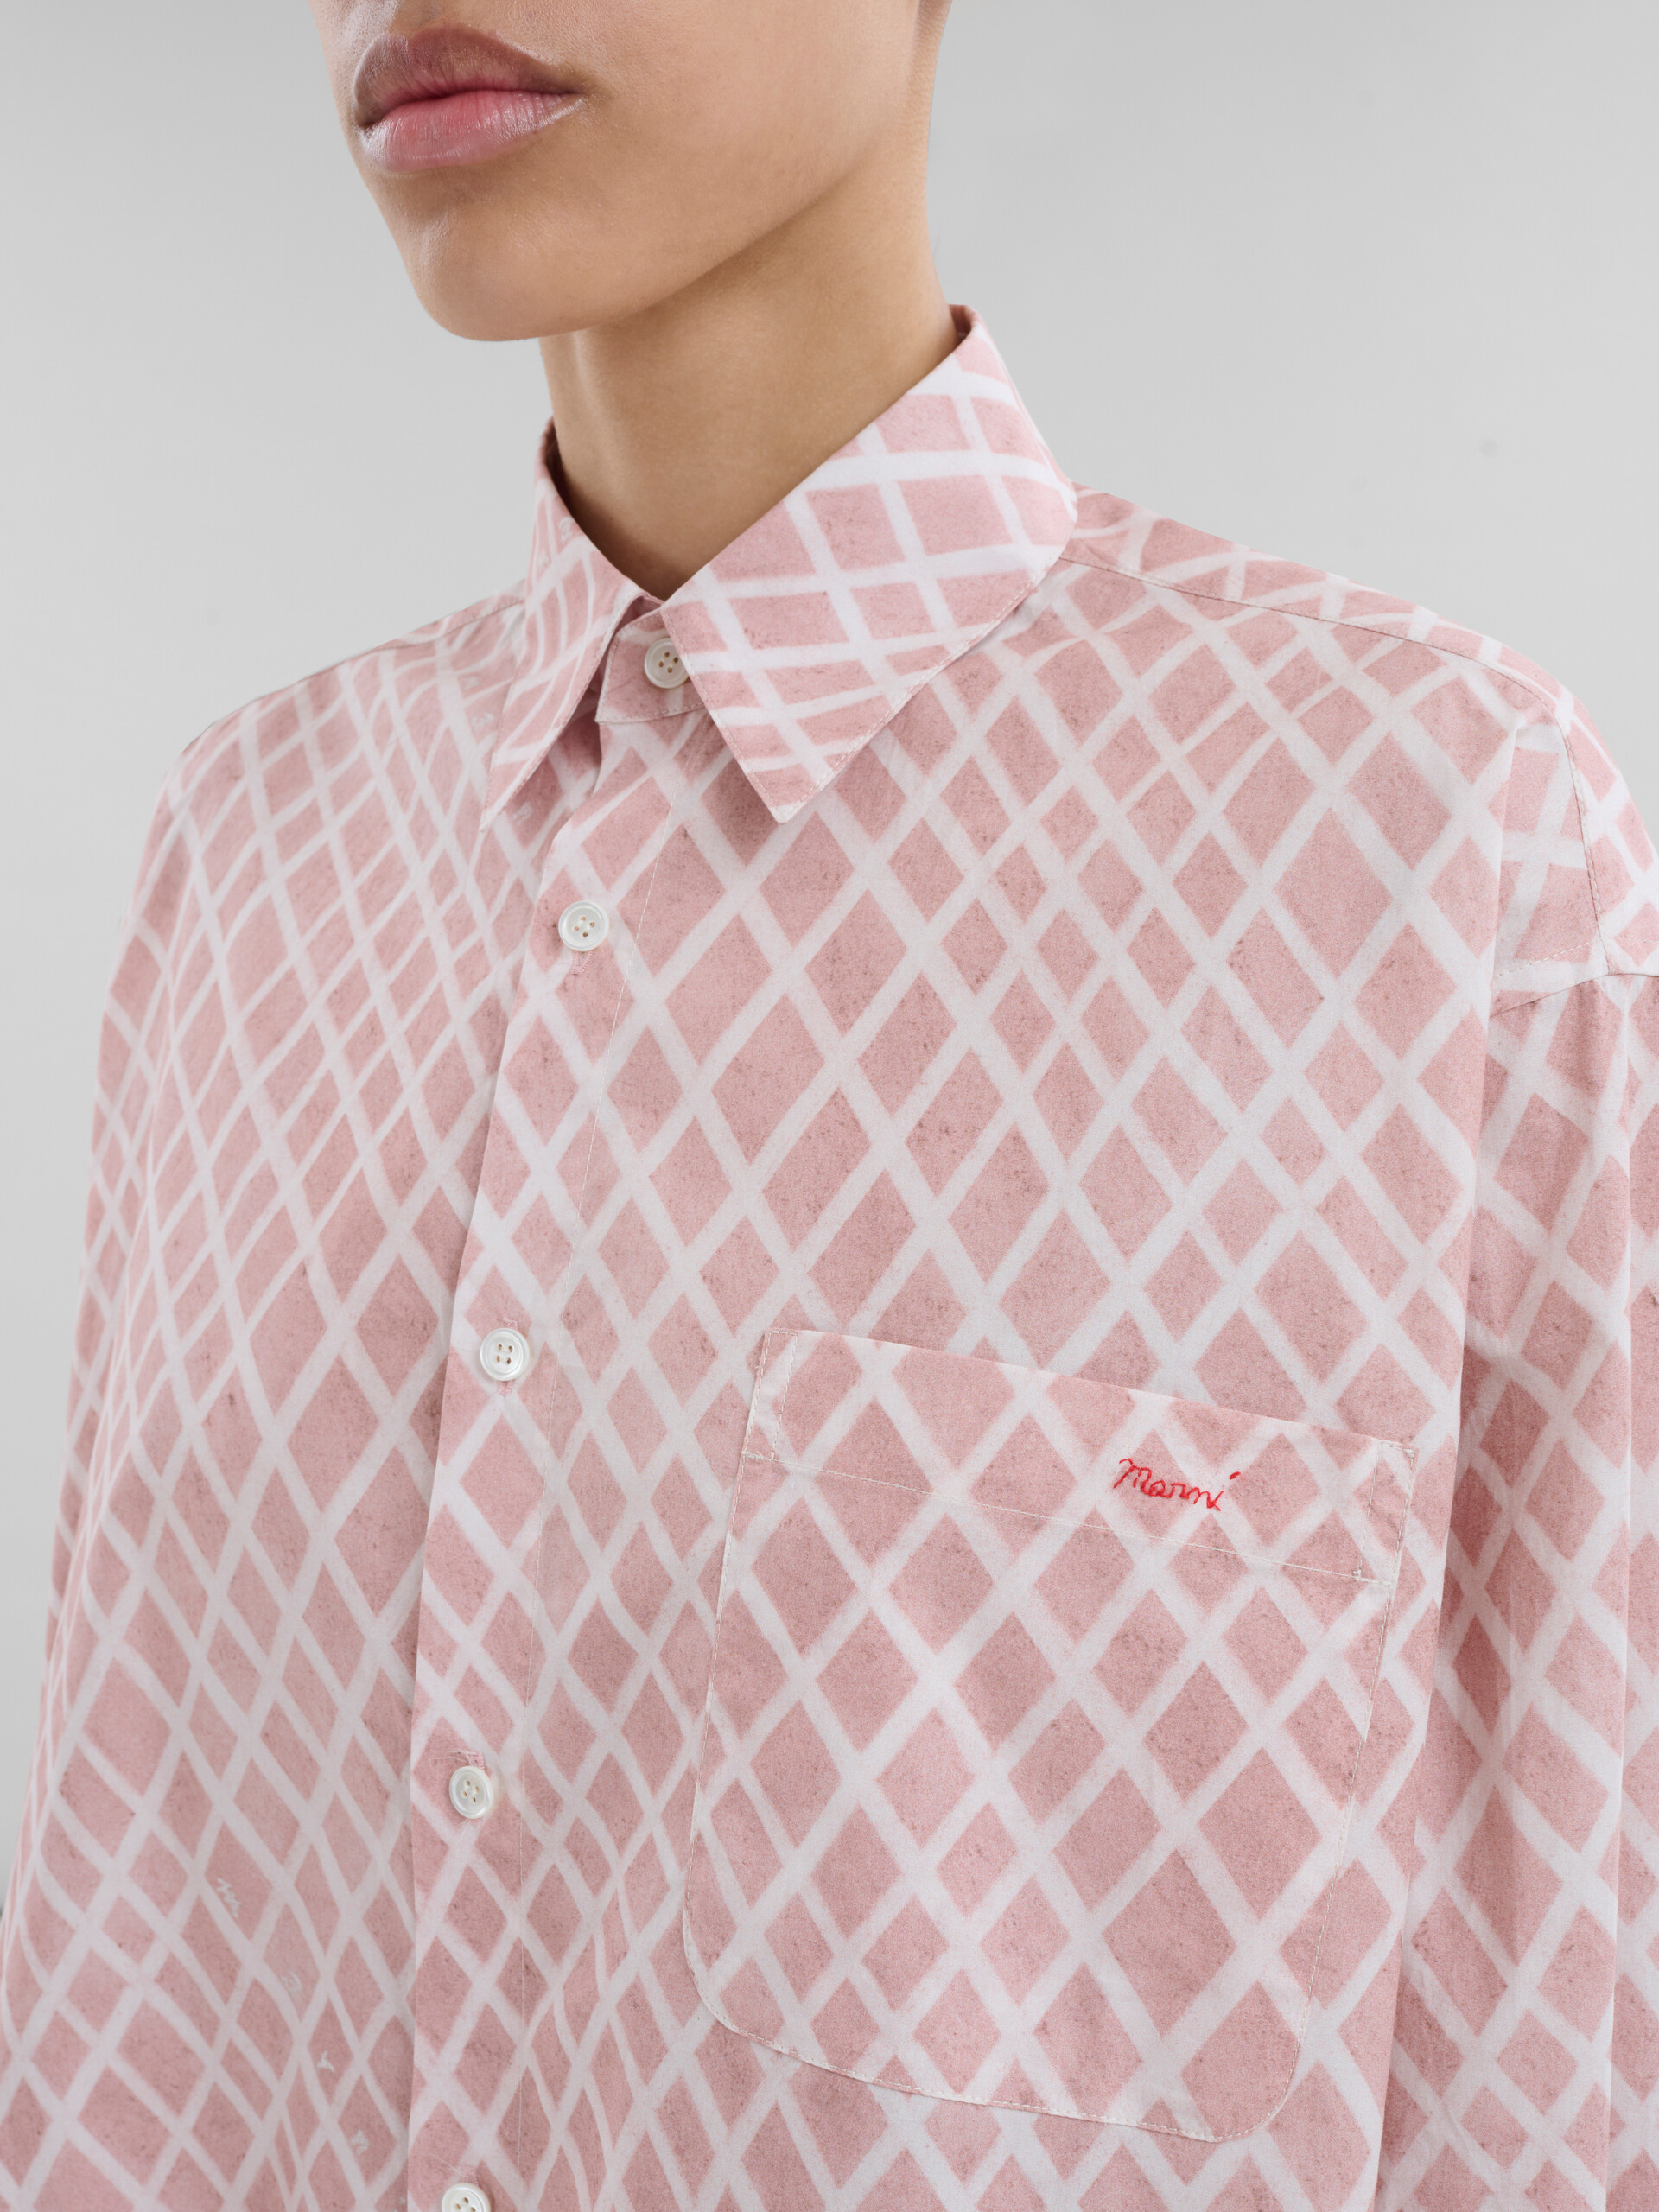 Camicia oversize in popeline rosa con stampa Landscapes - Camicie - Image 4